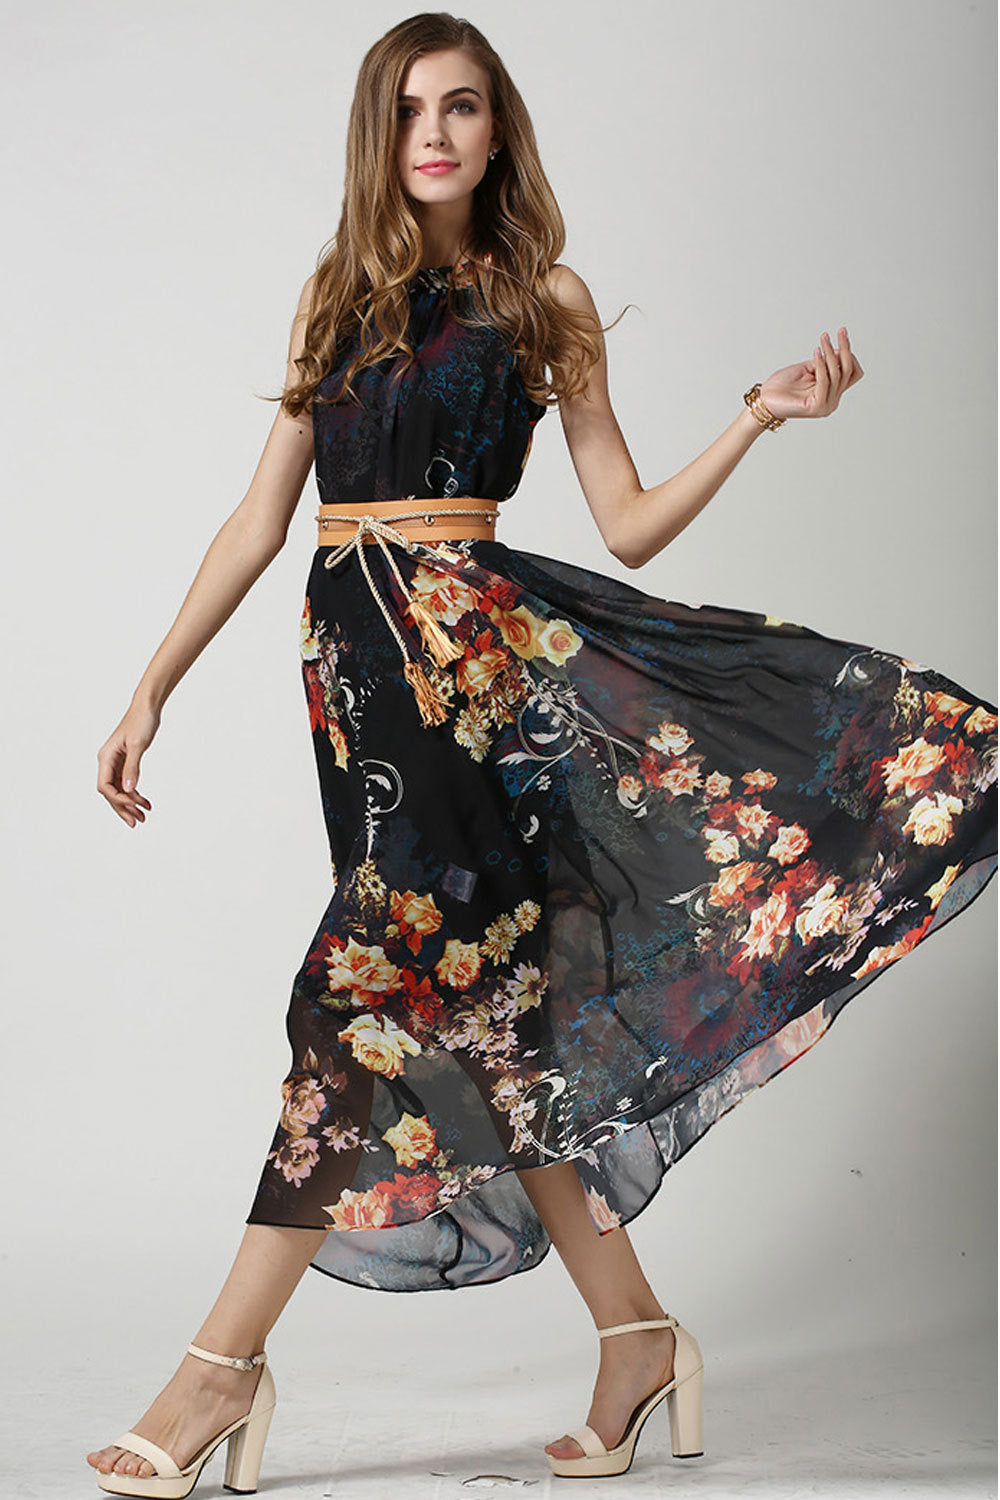 Ketty More Women's Sleeveless High-Waist Printed Chiffon Dress-KMWD214